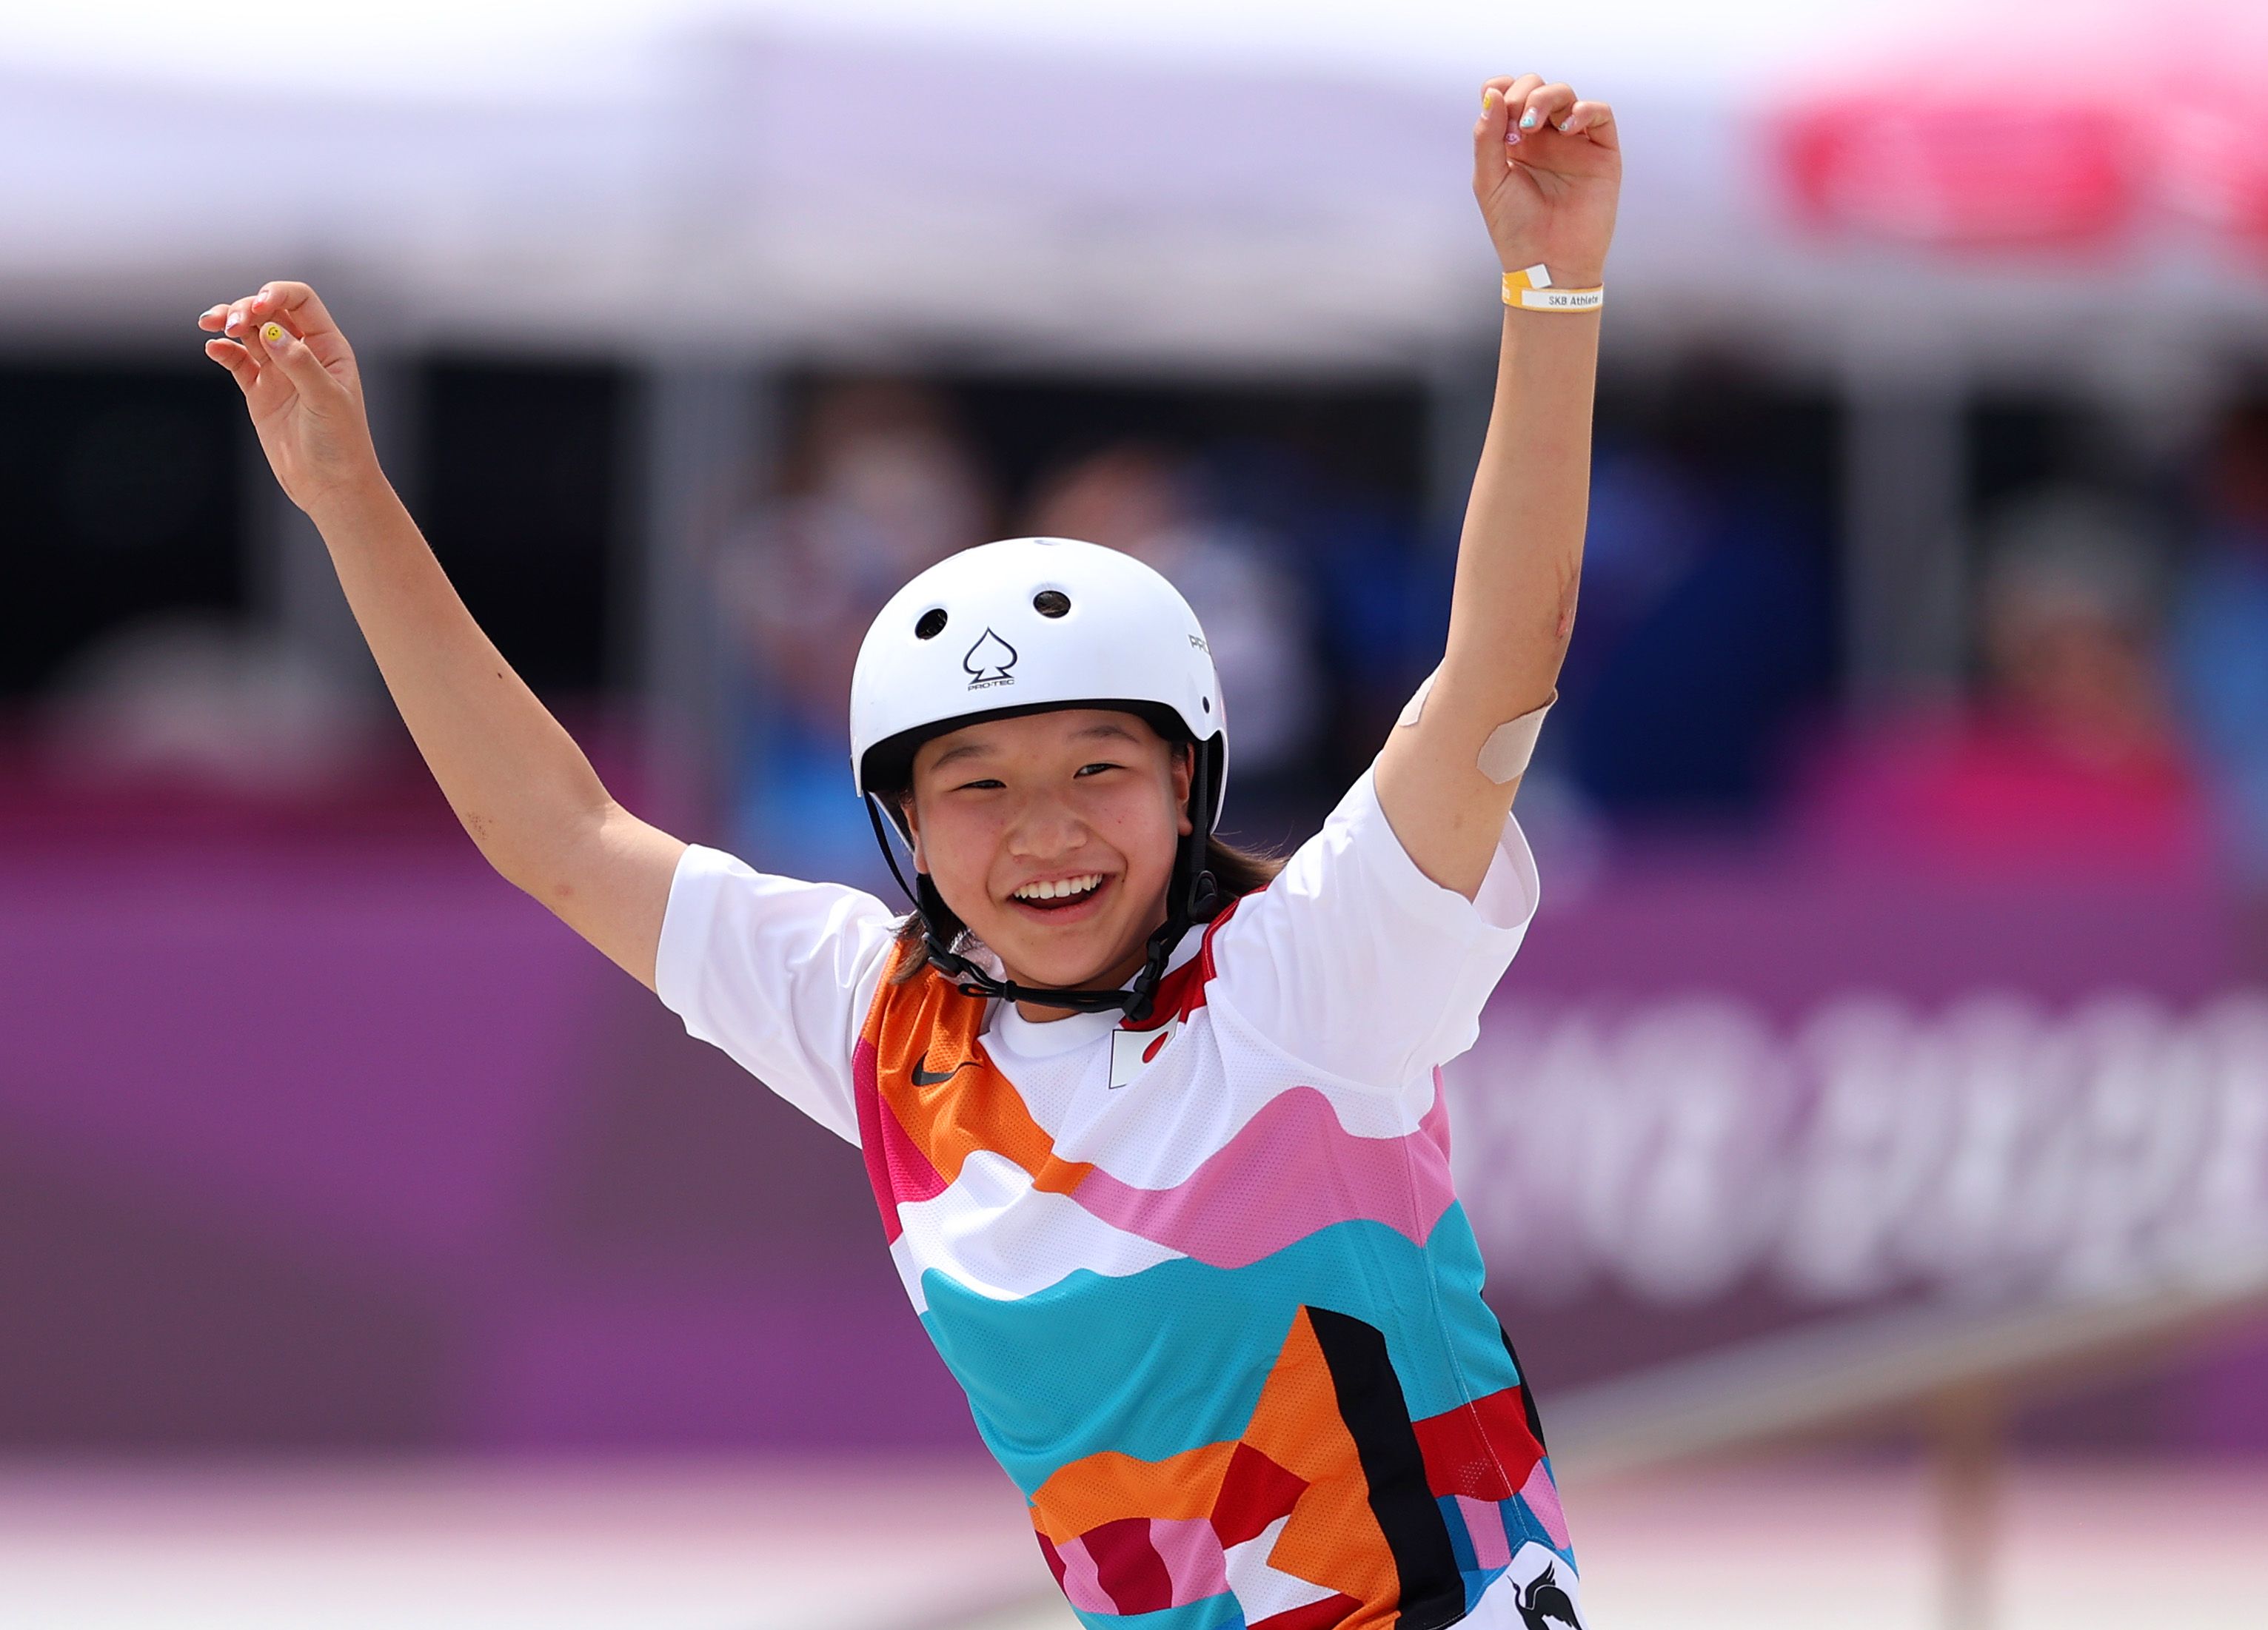 ¿Quién es Momiji Nishiya? Lo que hay que saber sobre la patinadora de 13 años que acaba de ganar el oro olímpico